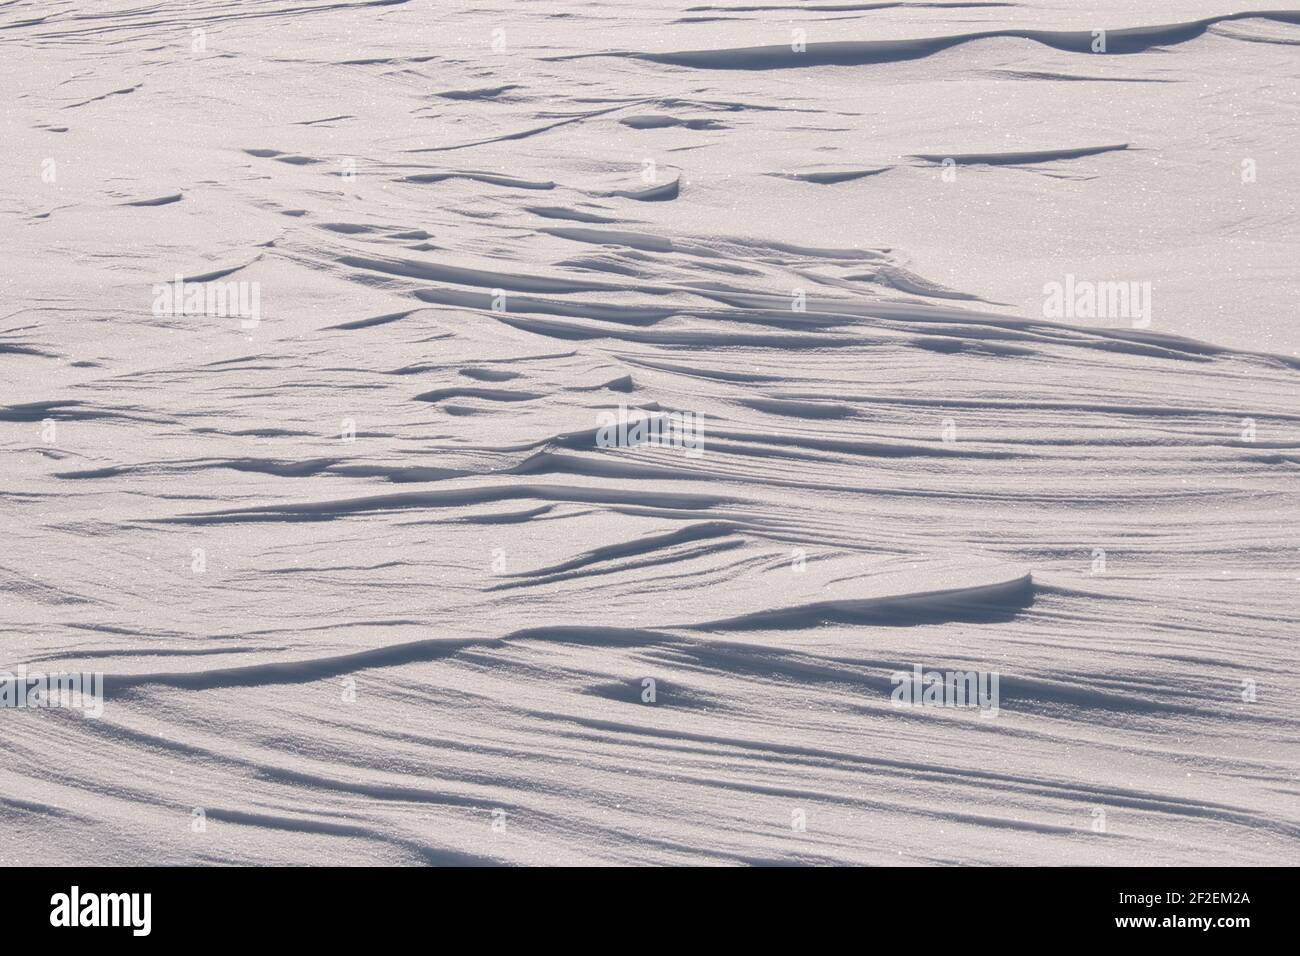 Motifs aléatoires dans la neige blanche étincelante créée par le vent Banque D'Images